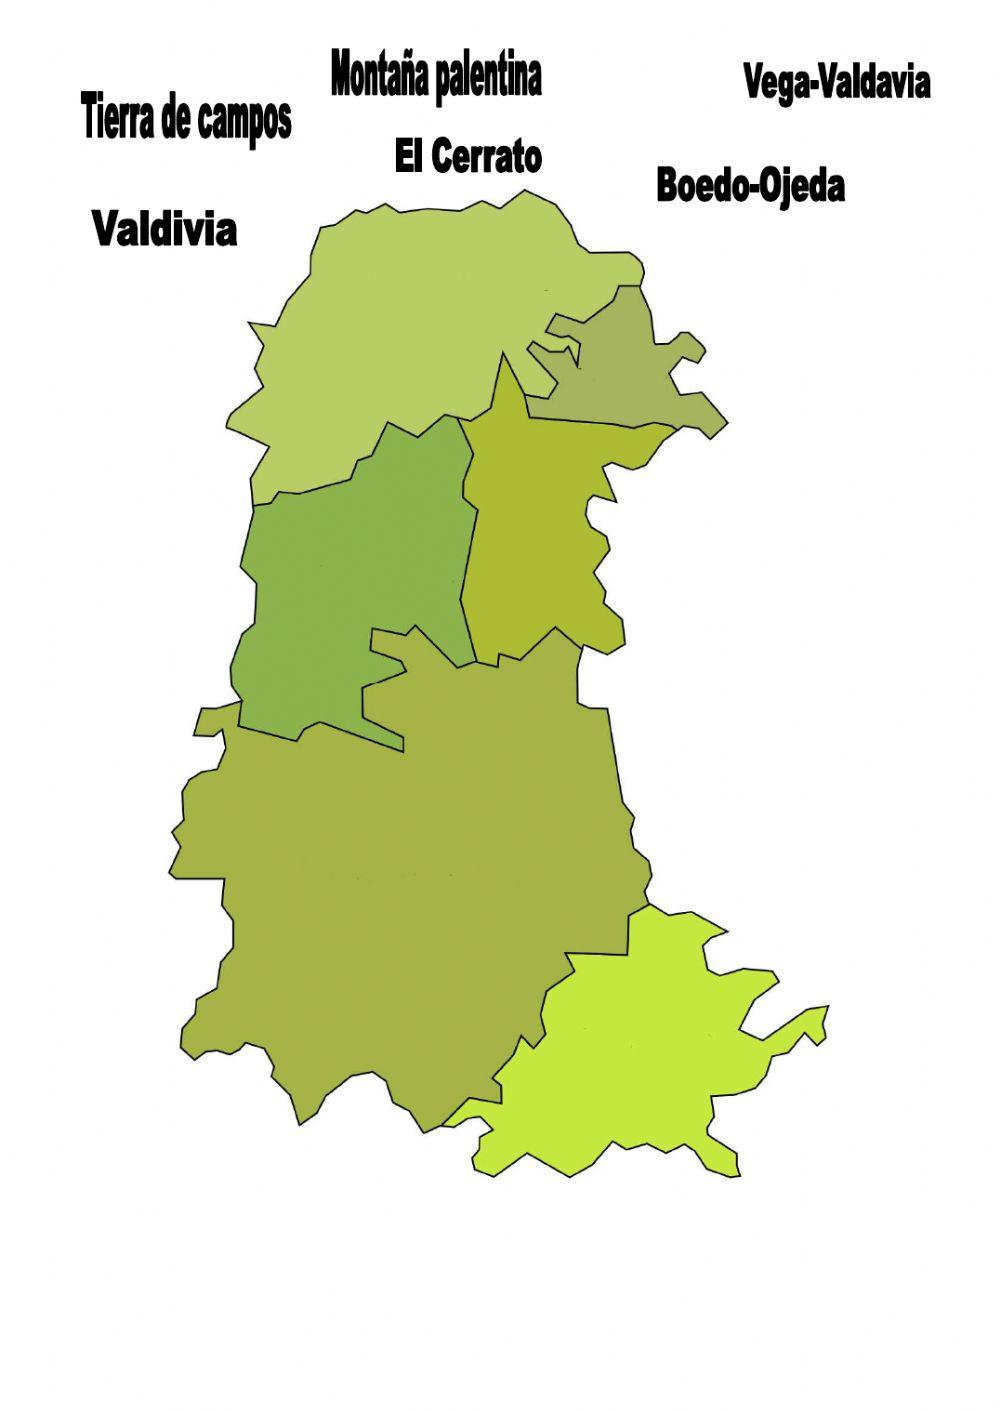 Regions of Palencia